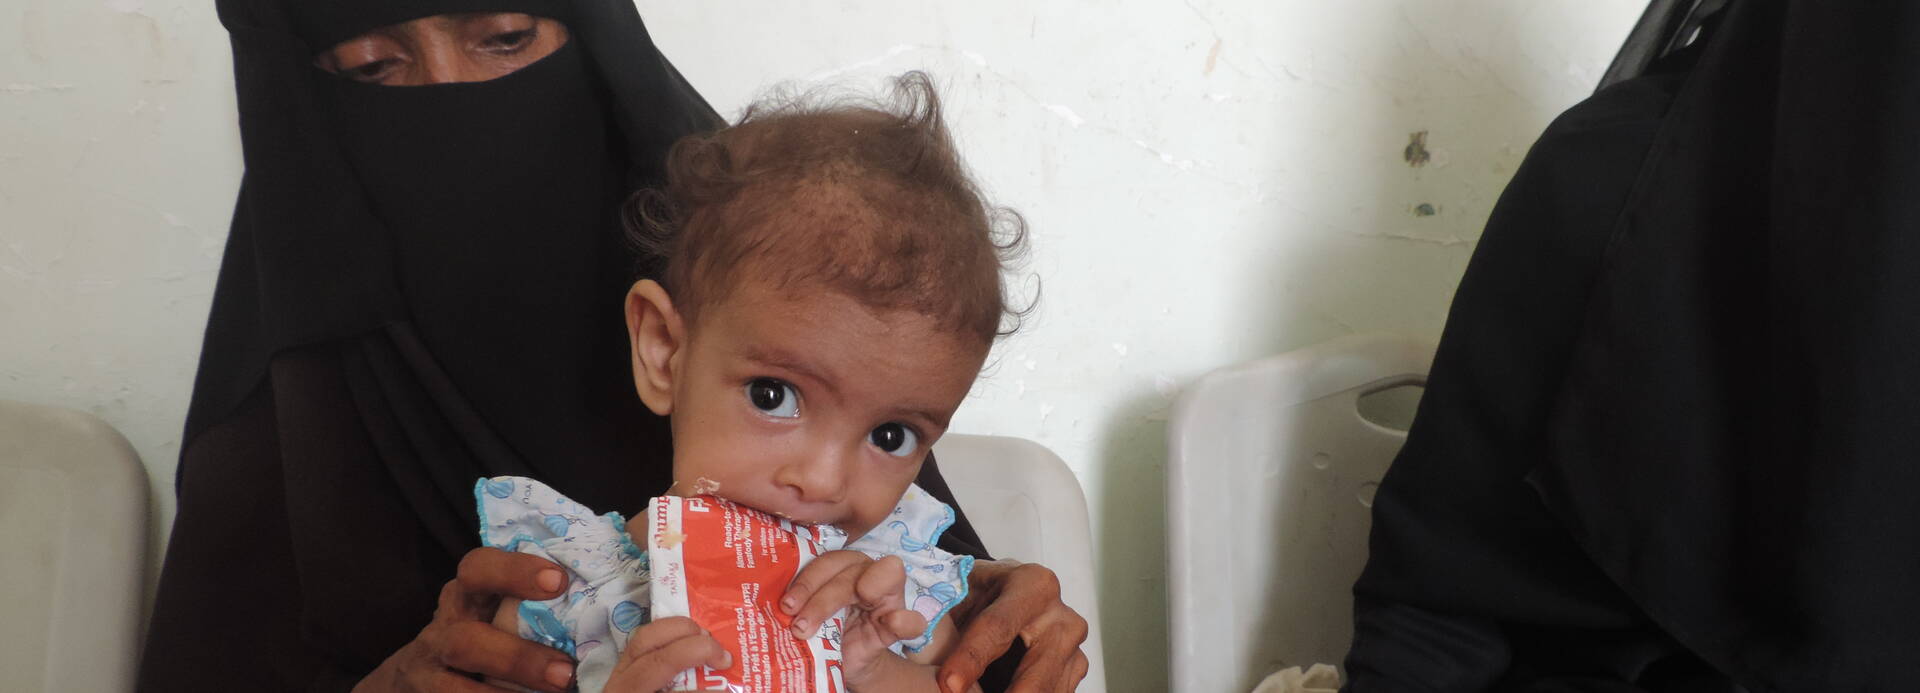 Aktut mangelernährtes Kind im Jemen mit lebensrettender Aufbaunahrung